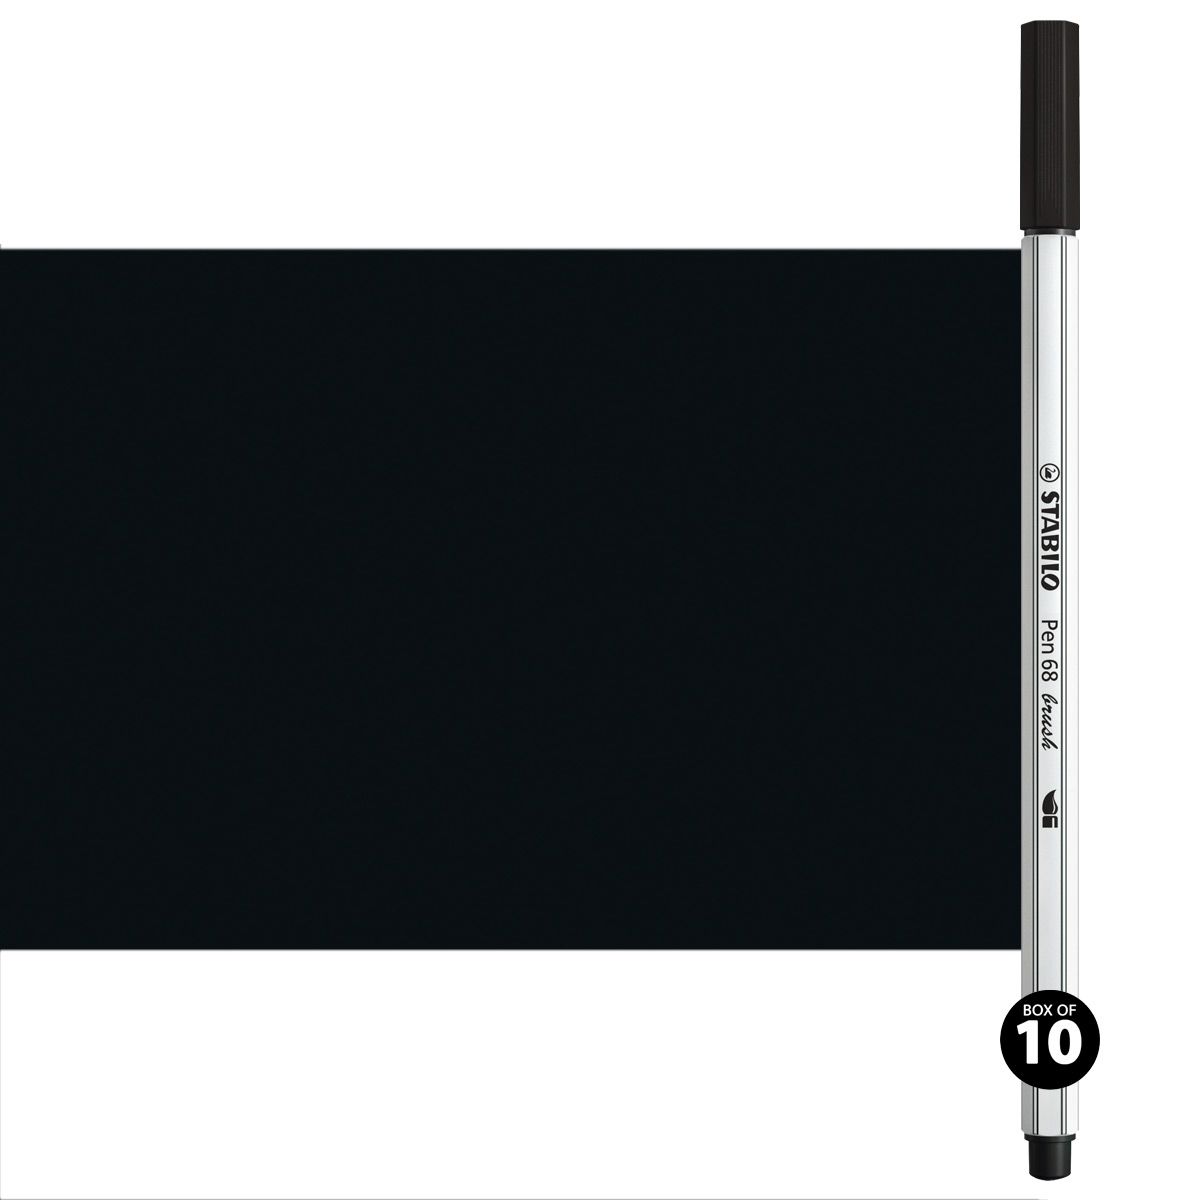 STABILO Pen 68 Black Pack of 10 - Premium Felt-tip Pen